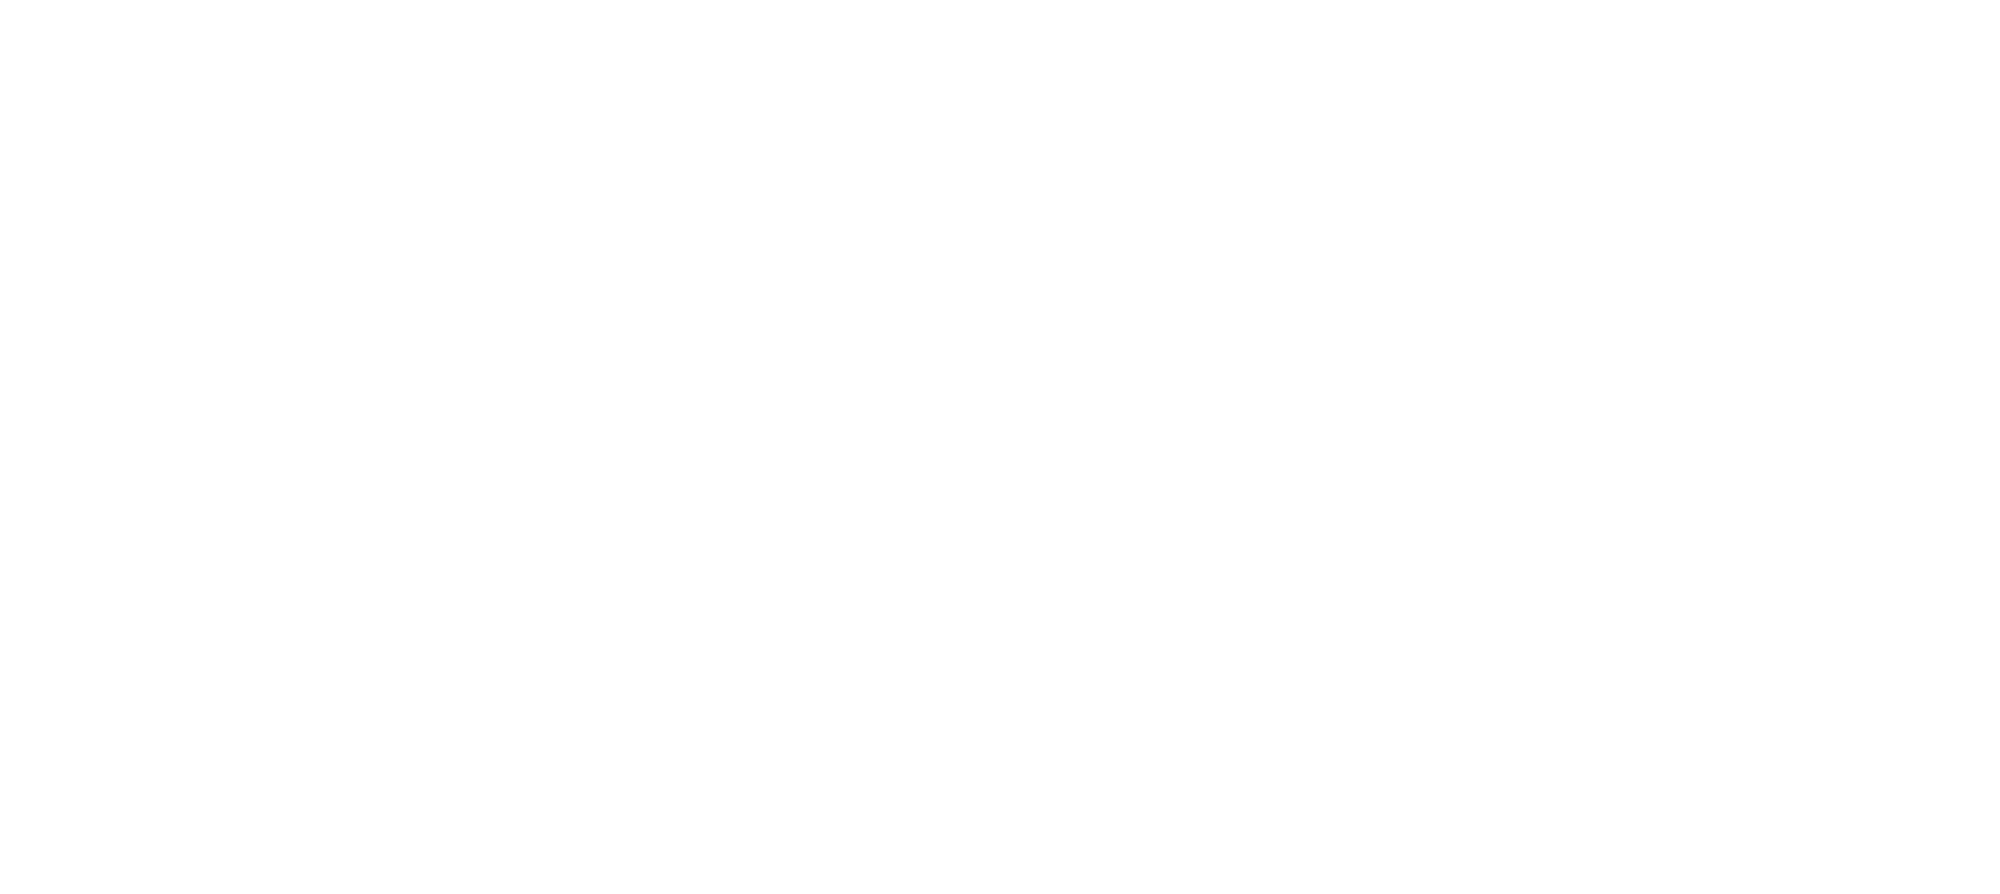 Happy Campers Australia Logo